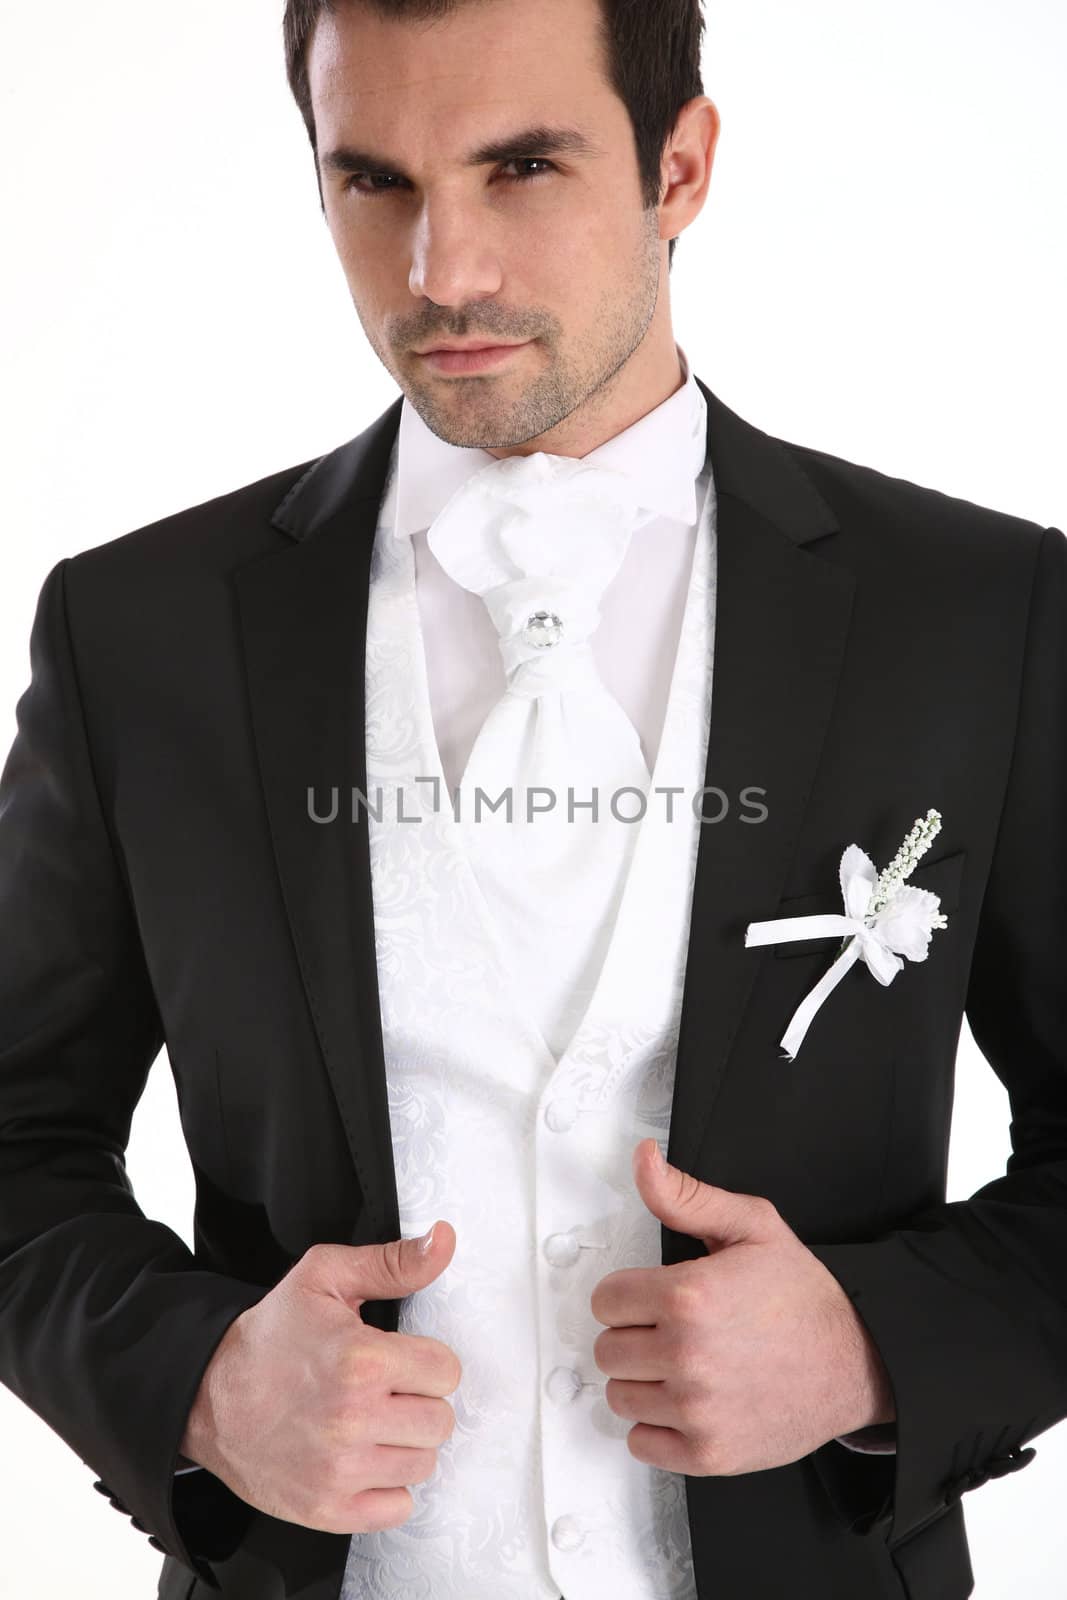 Portrait of handsome man in tuxedo